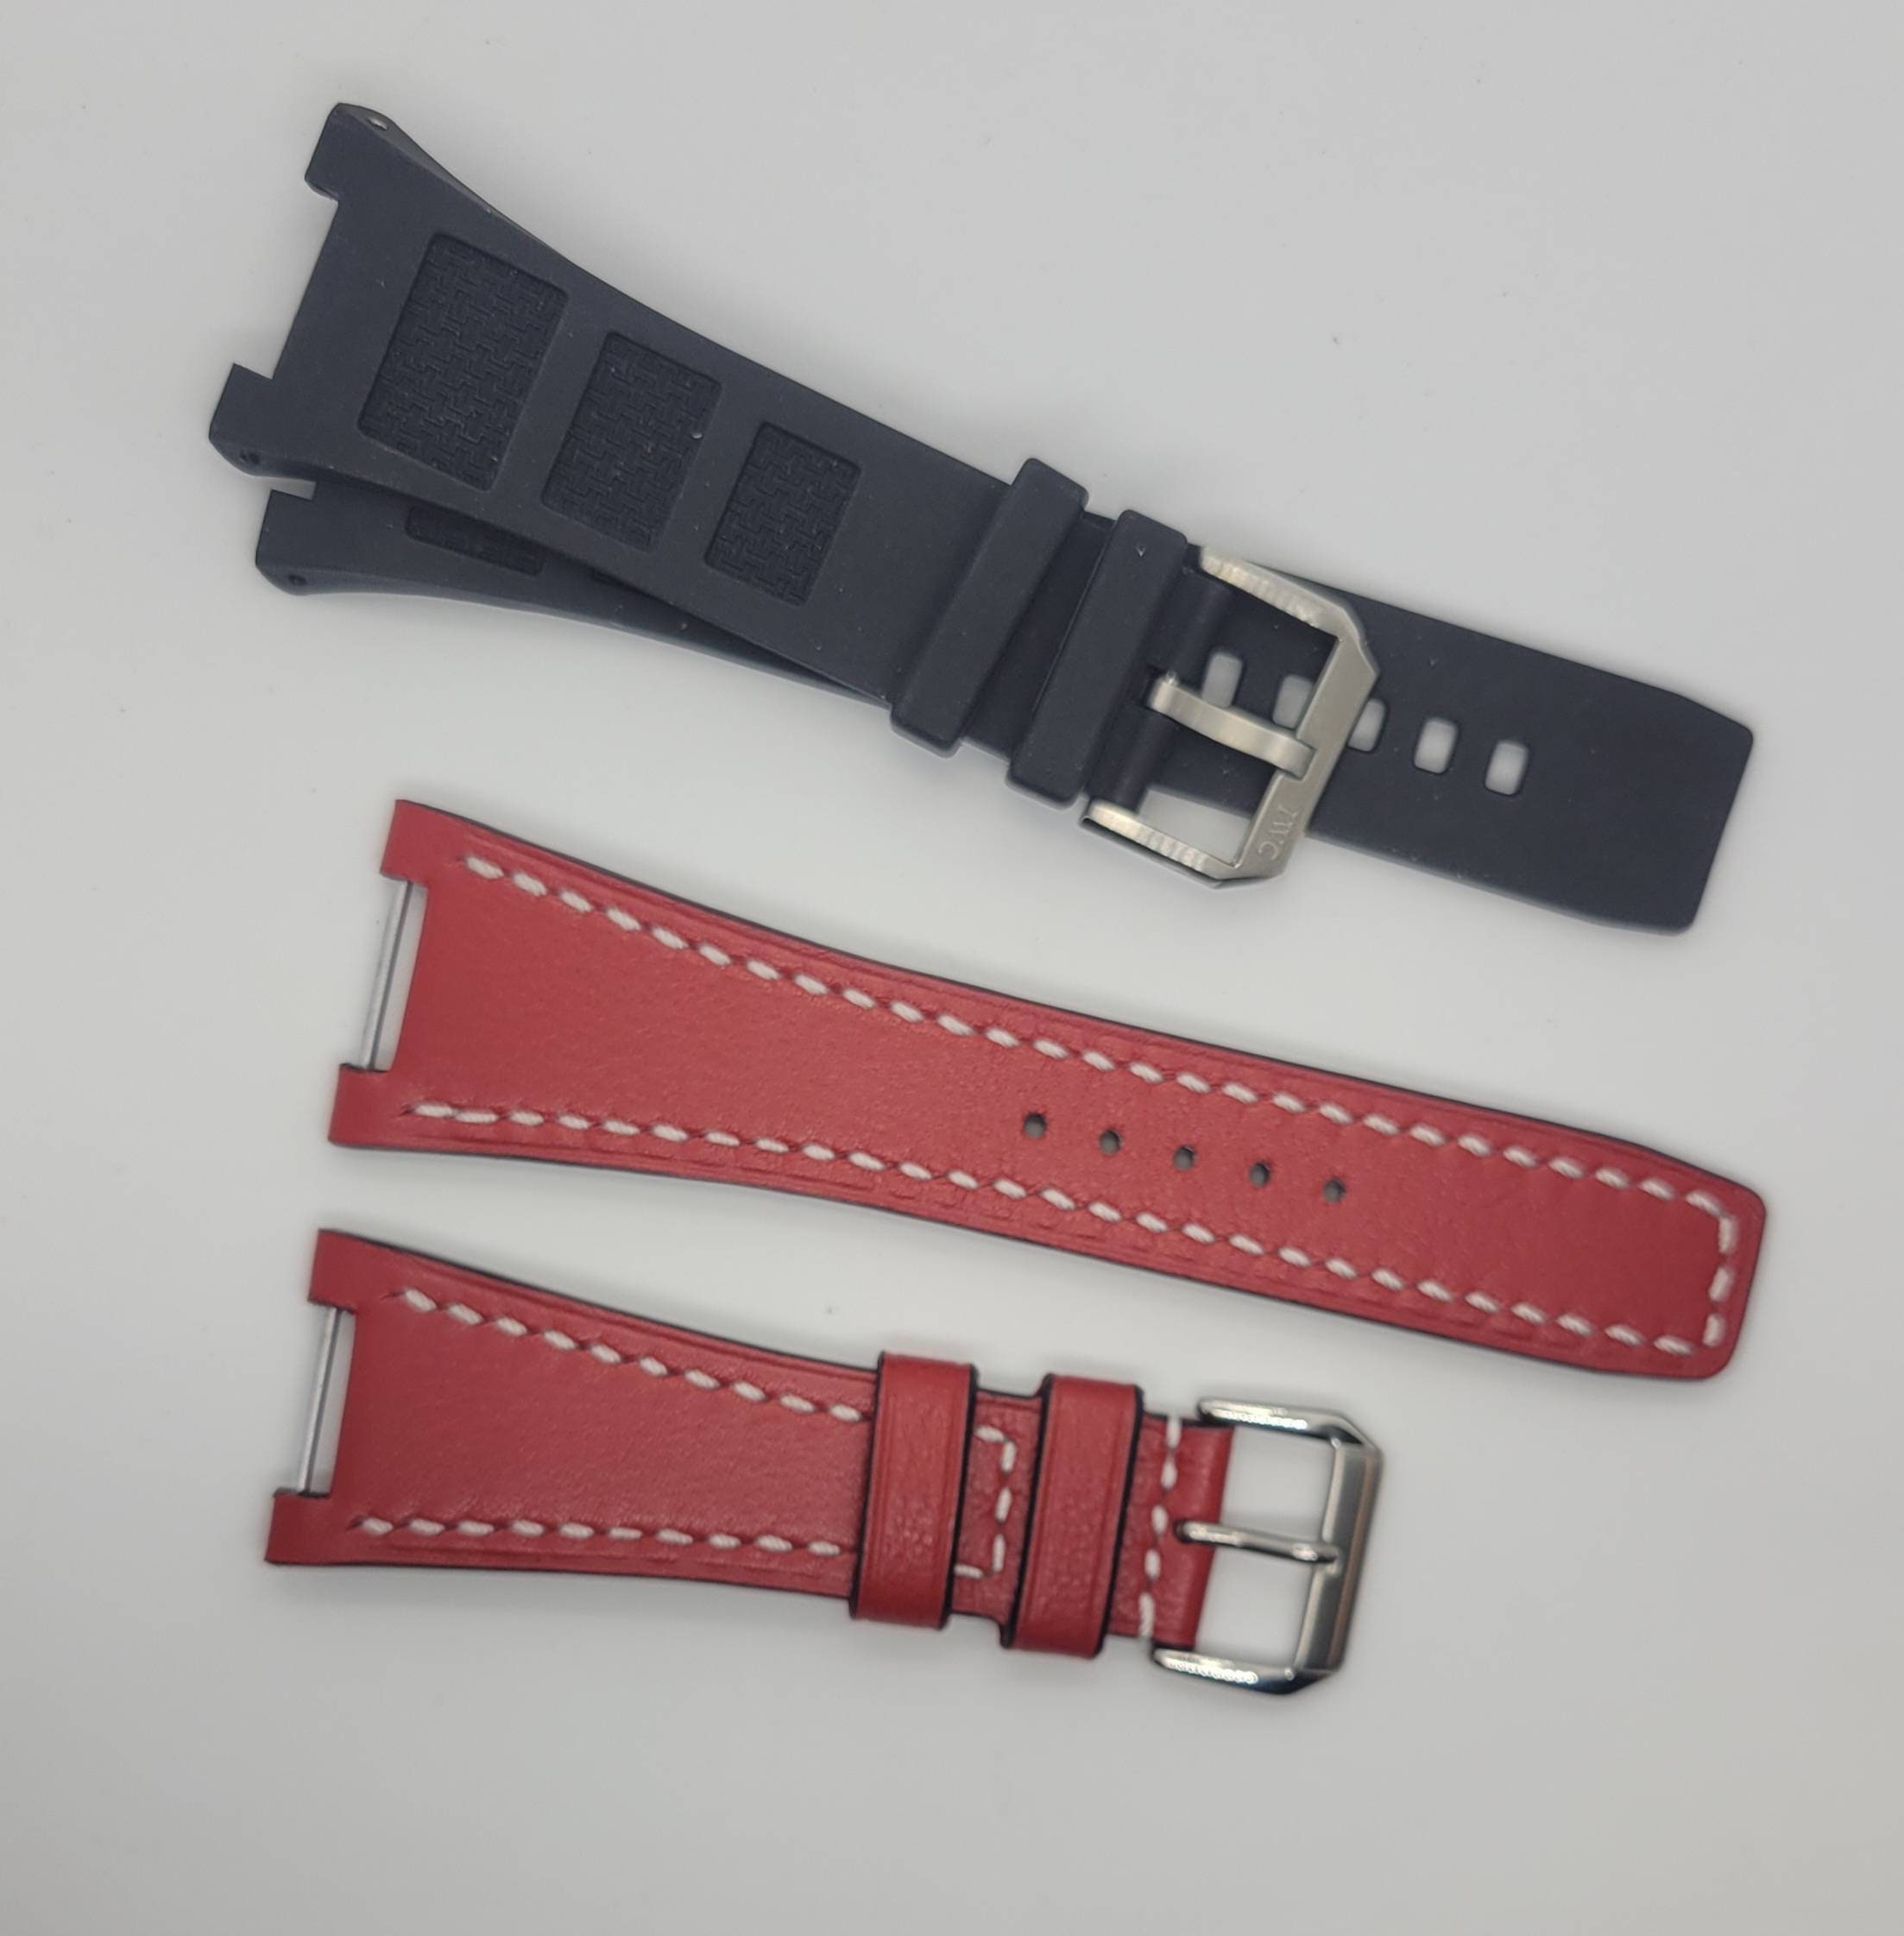 Other IWC Watches Straps - Minimalist LV Monogram – Liger Straps